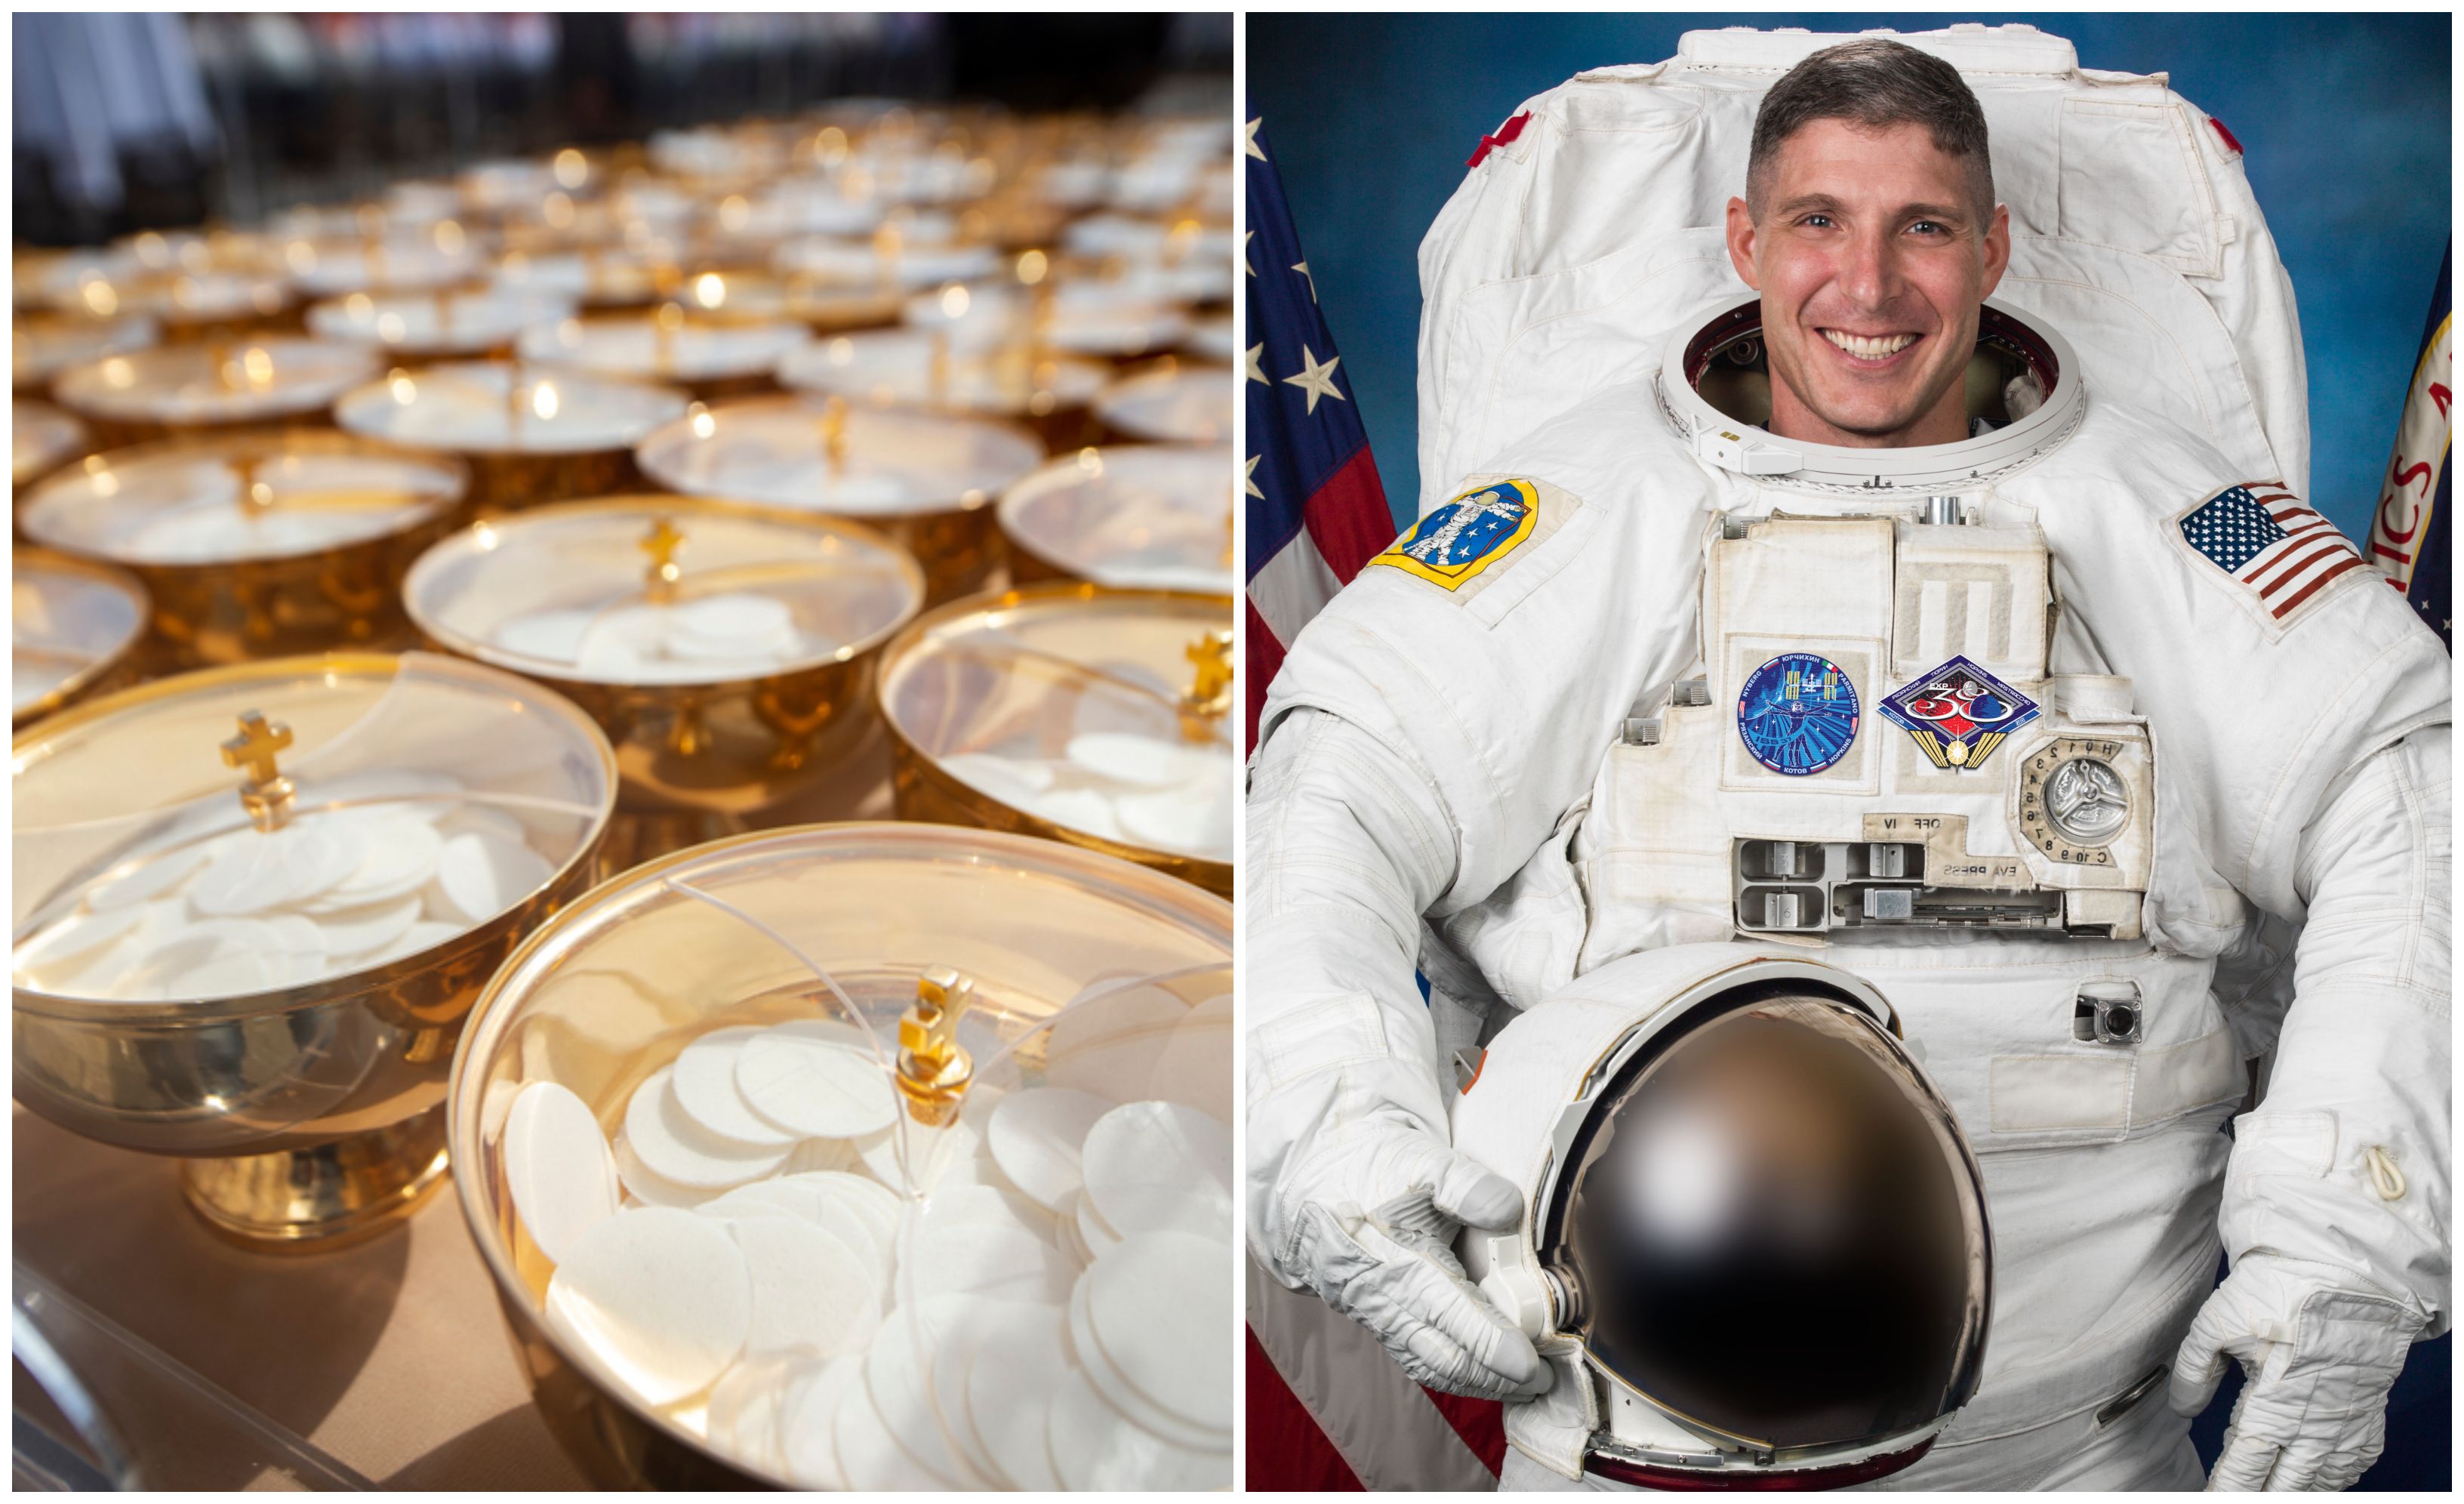 astronaut, Michael hopkins, pričest u svemiru, euharistija u svemiru